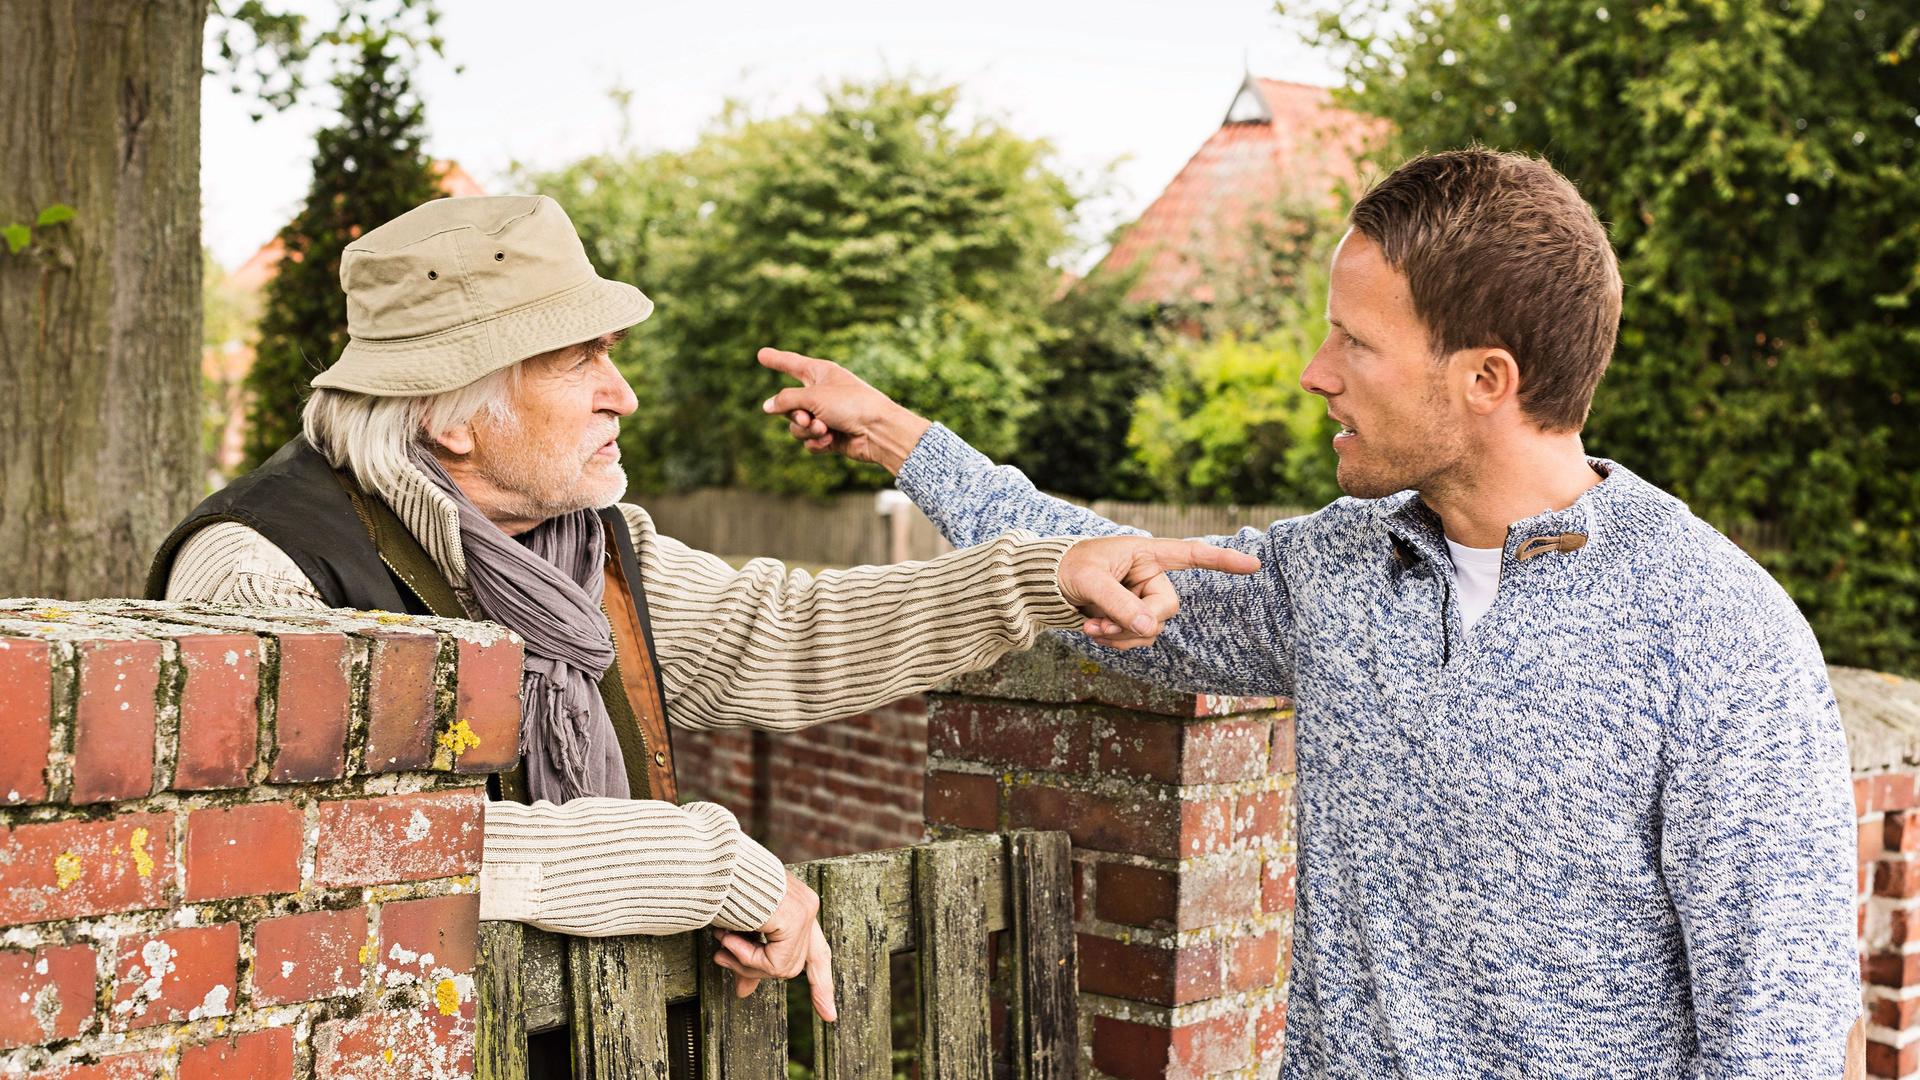 Ein älterer Mann und ein weiterer erwachsener Mann streiten sich am Gartentor. Sie drohen sich mit Gesten.